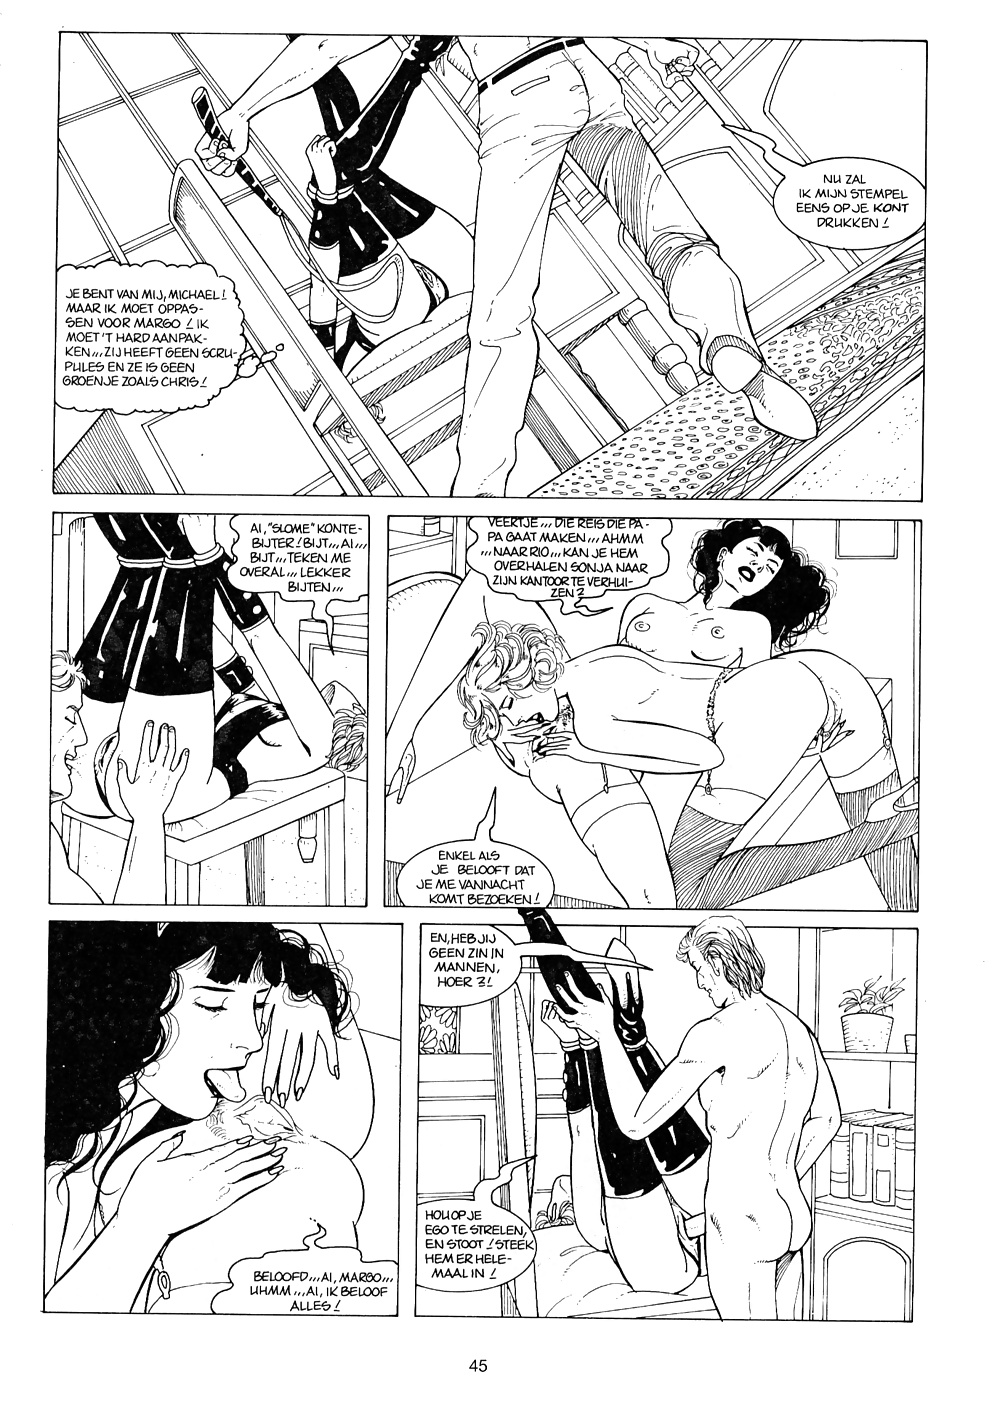 Weinlese-Comic - Bondage Lust #40775572